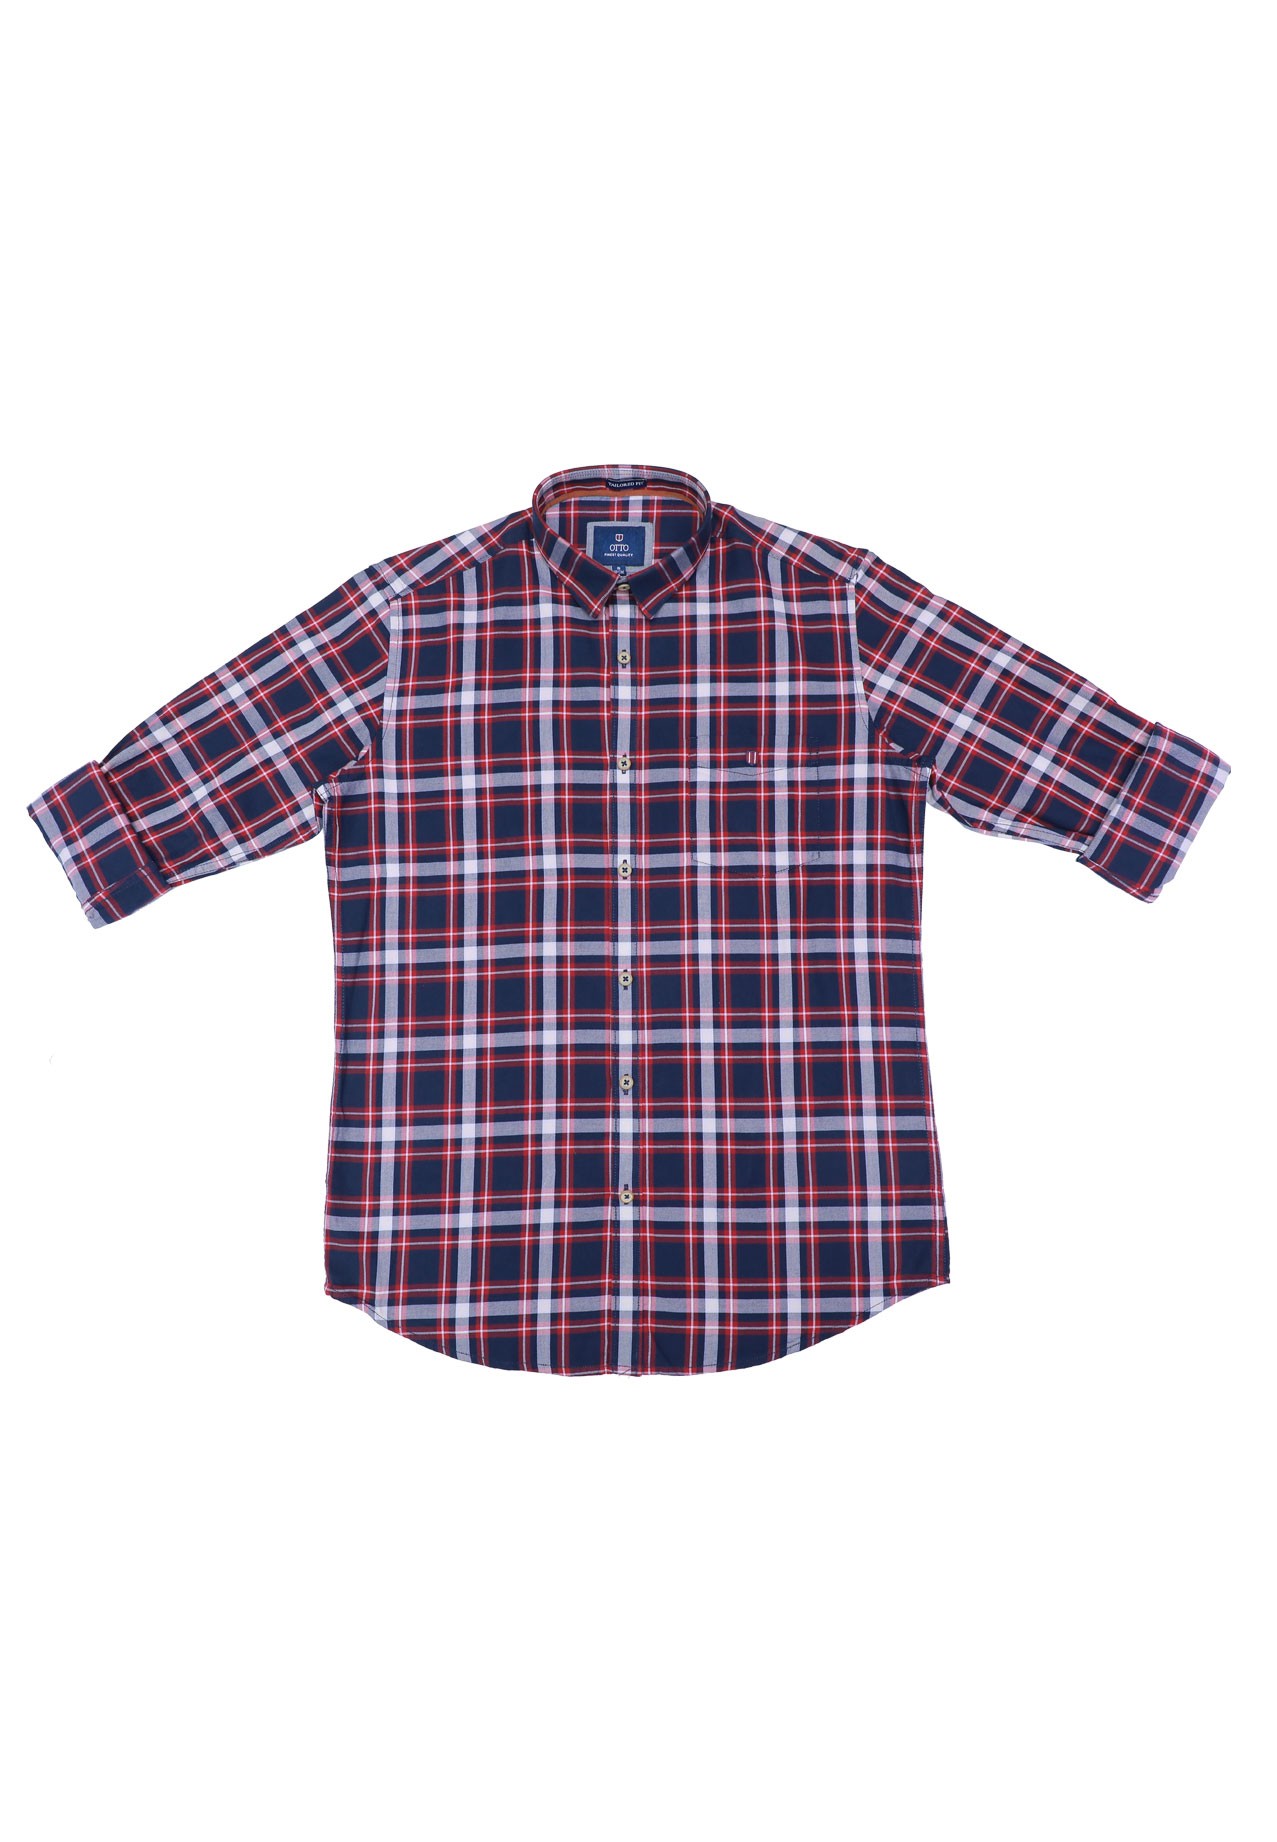 Buy Otto Mens Semi Casual Shirt Long Sleeve Online Dubai, UAE ...